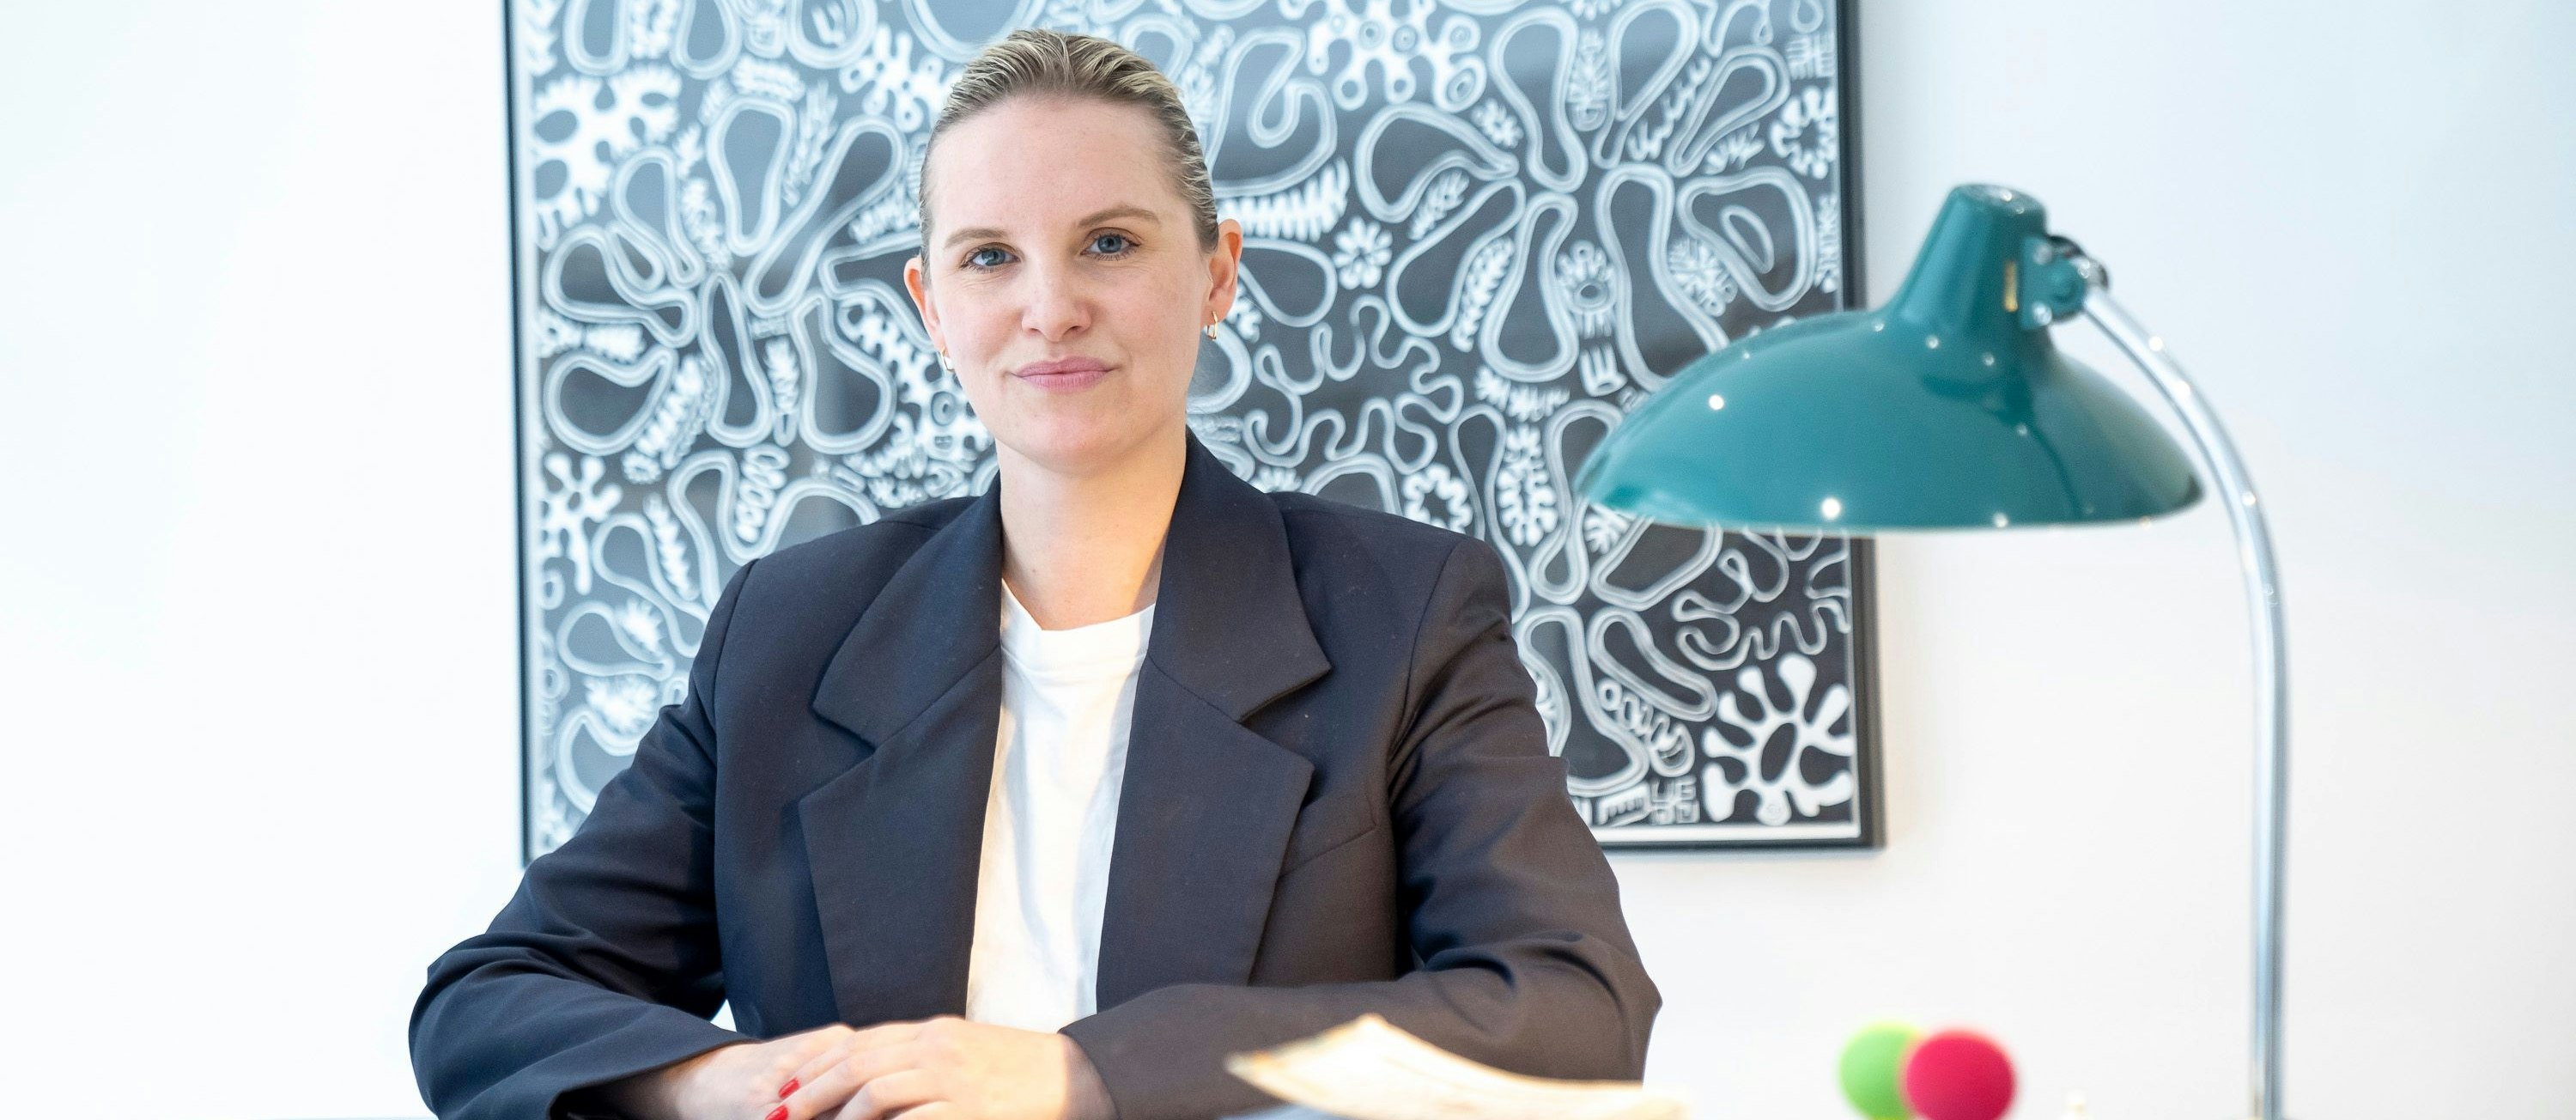 Lena Marie Glaser ist Juristin und Expertin für neue Arbeitswelten